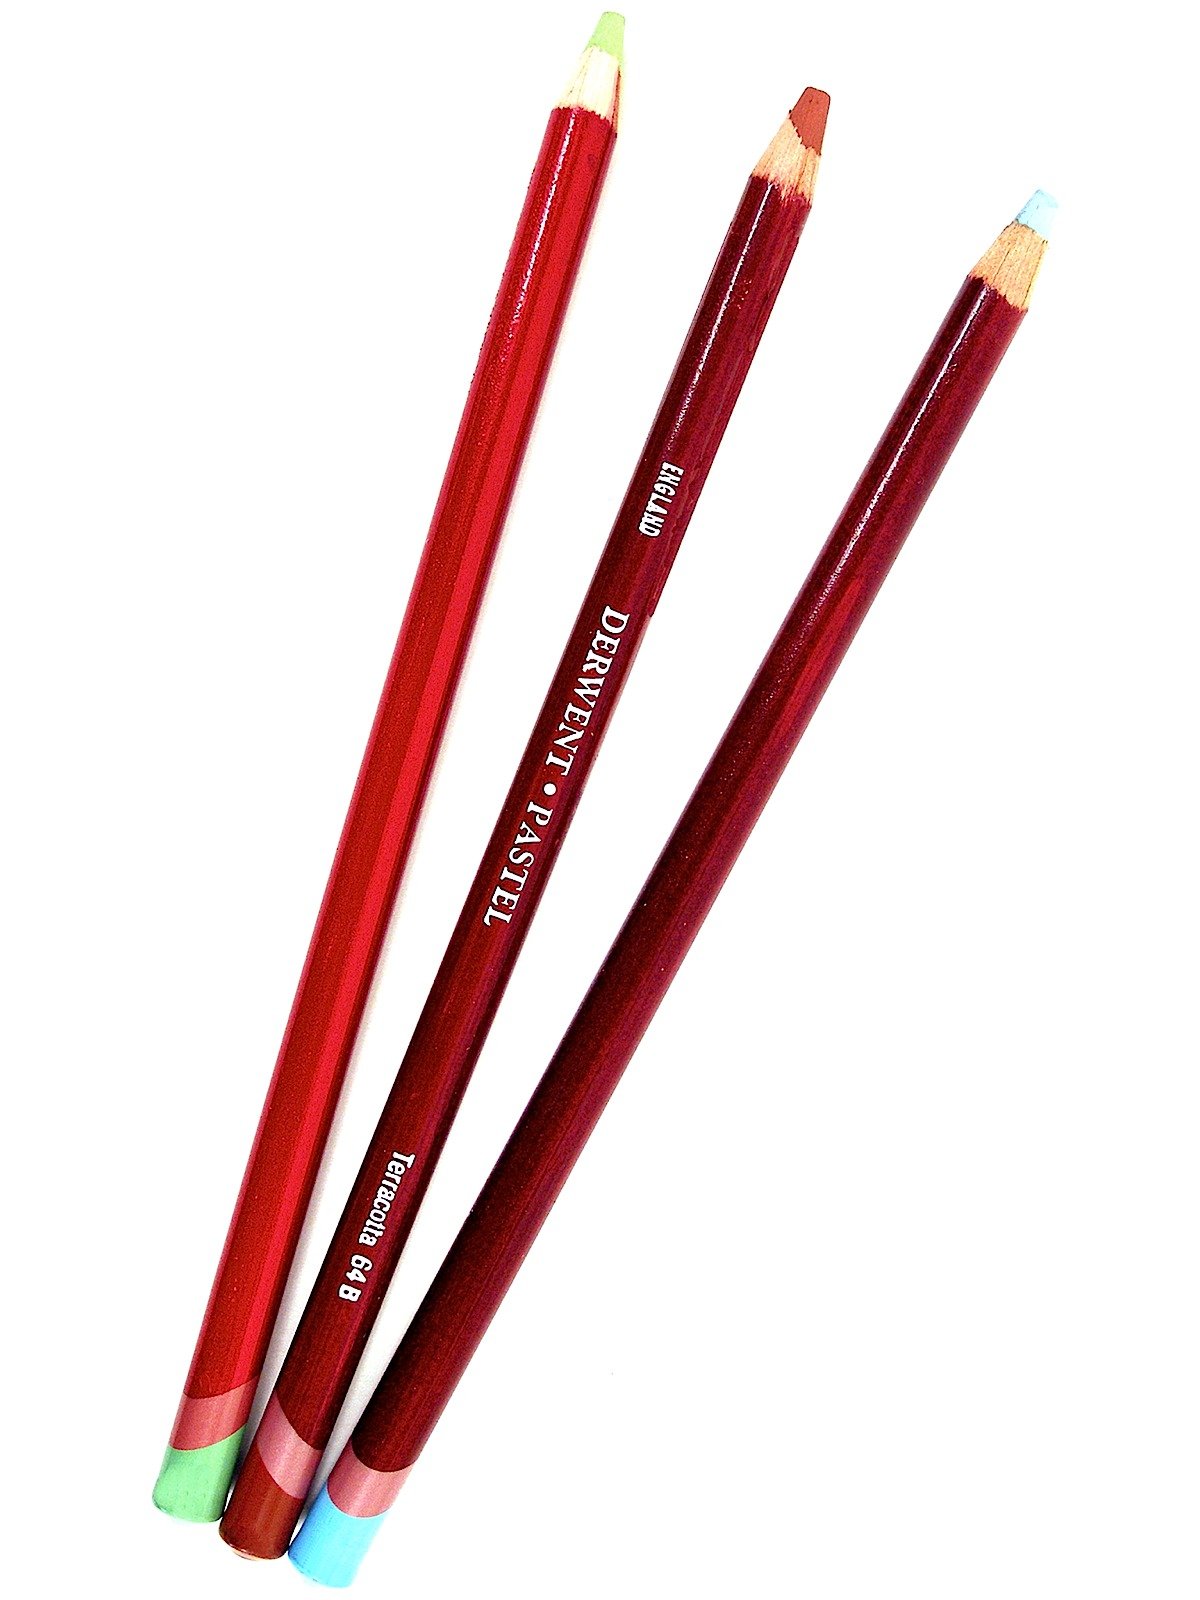 Derwent - Pastel Pencils